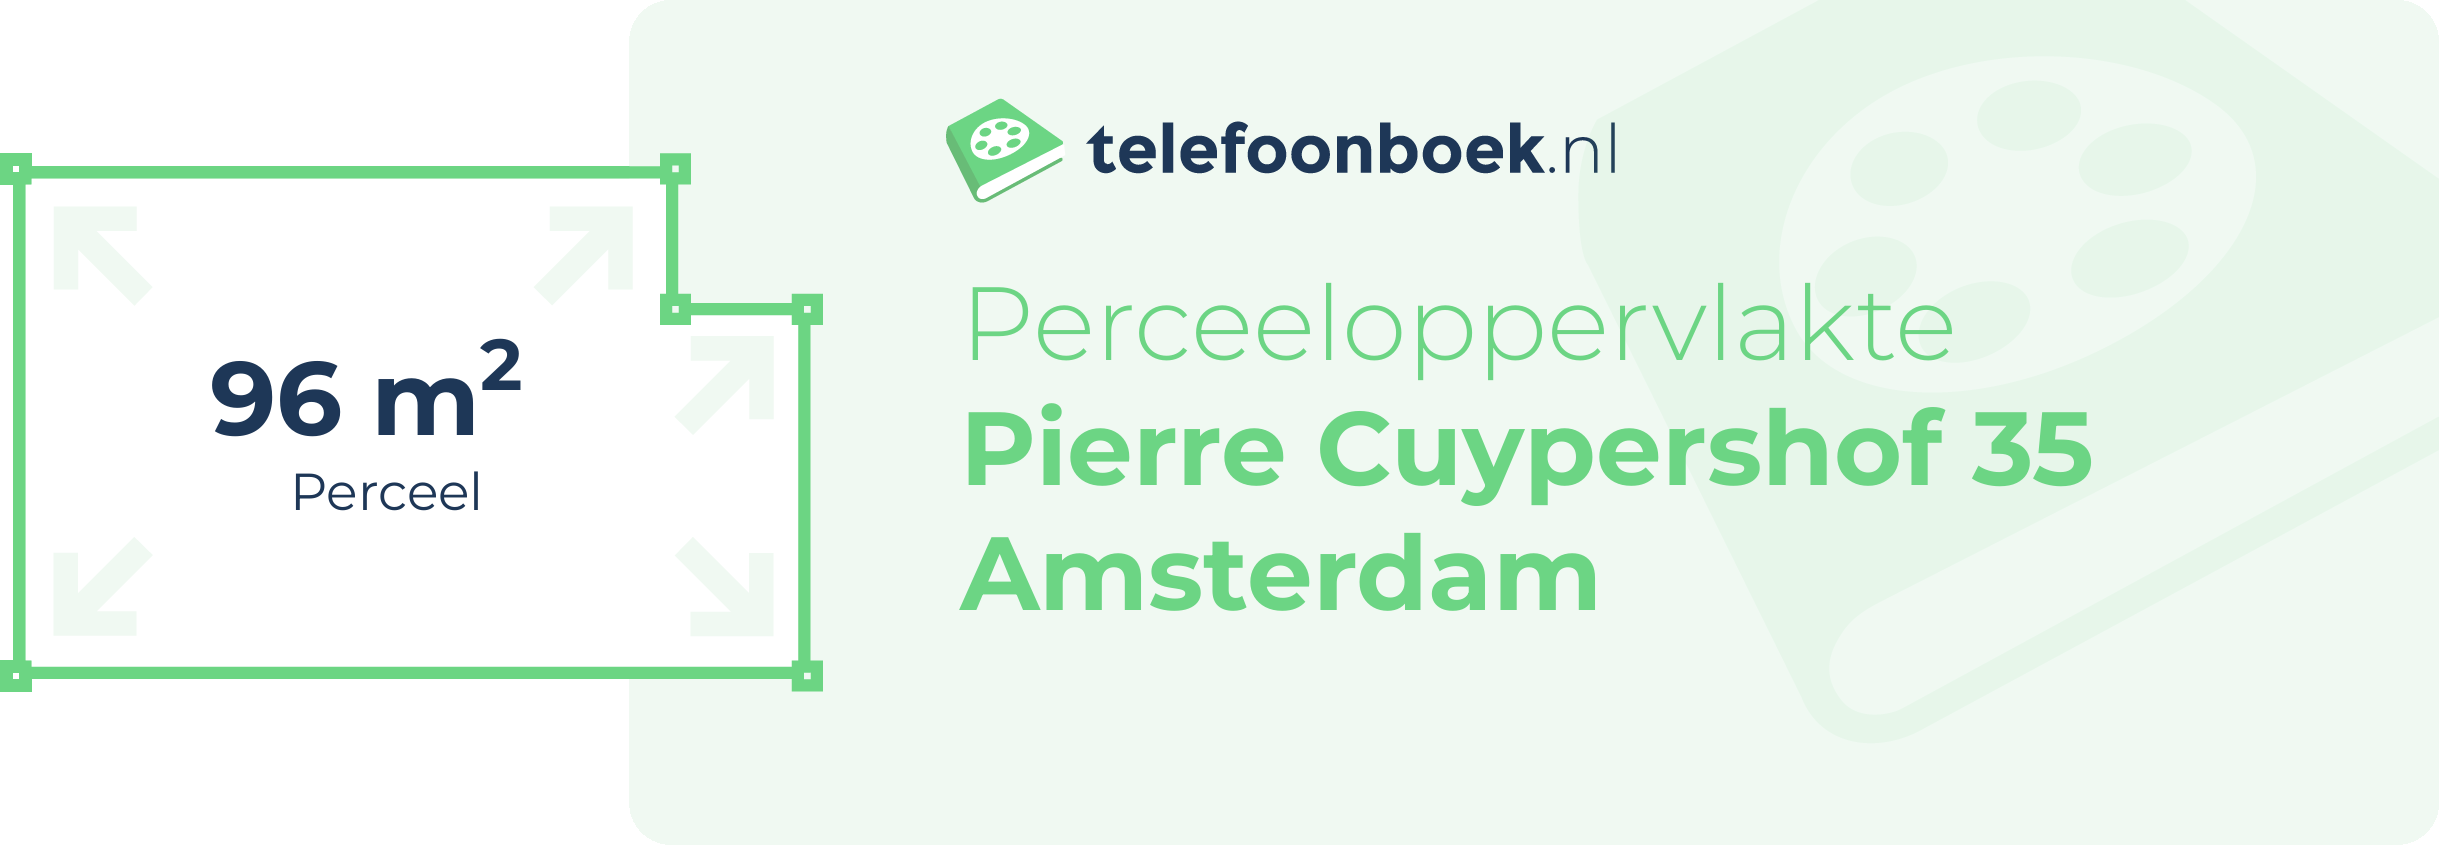 Perceeloppervlakte Pierre Cuypershof 35 Amsterdam